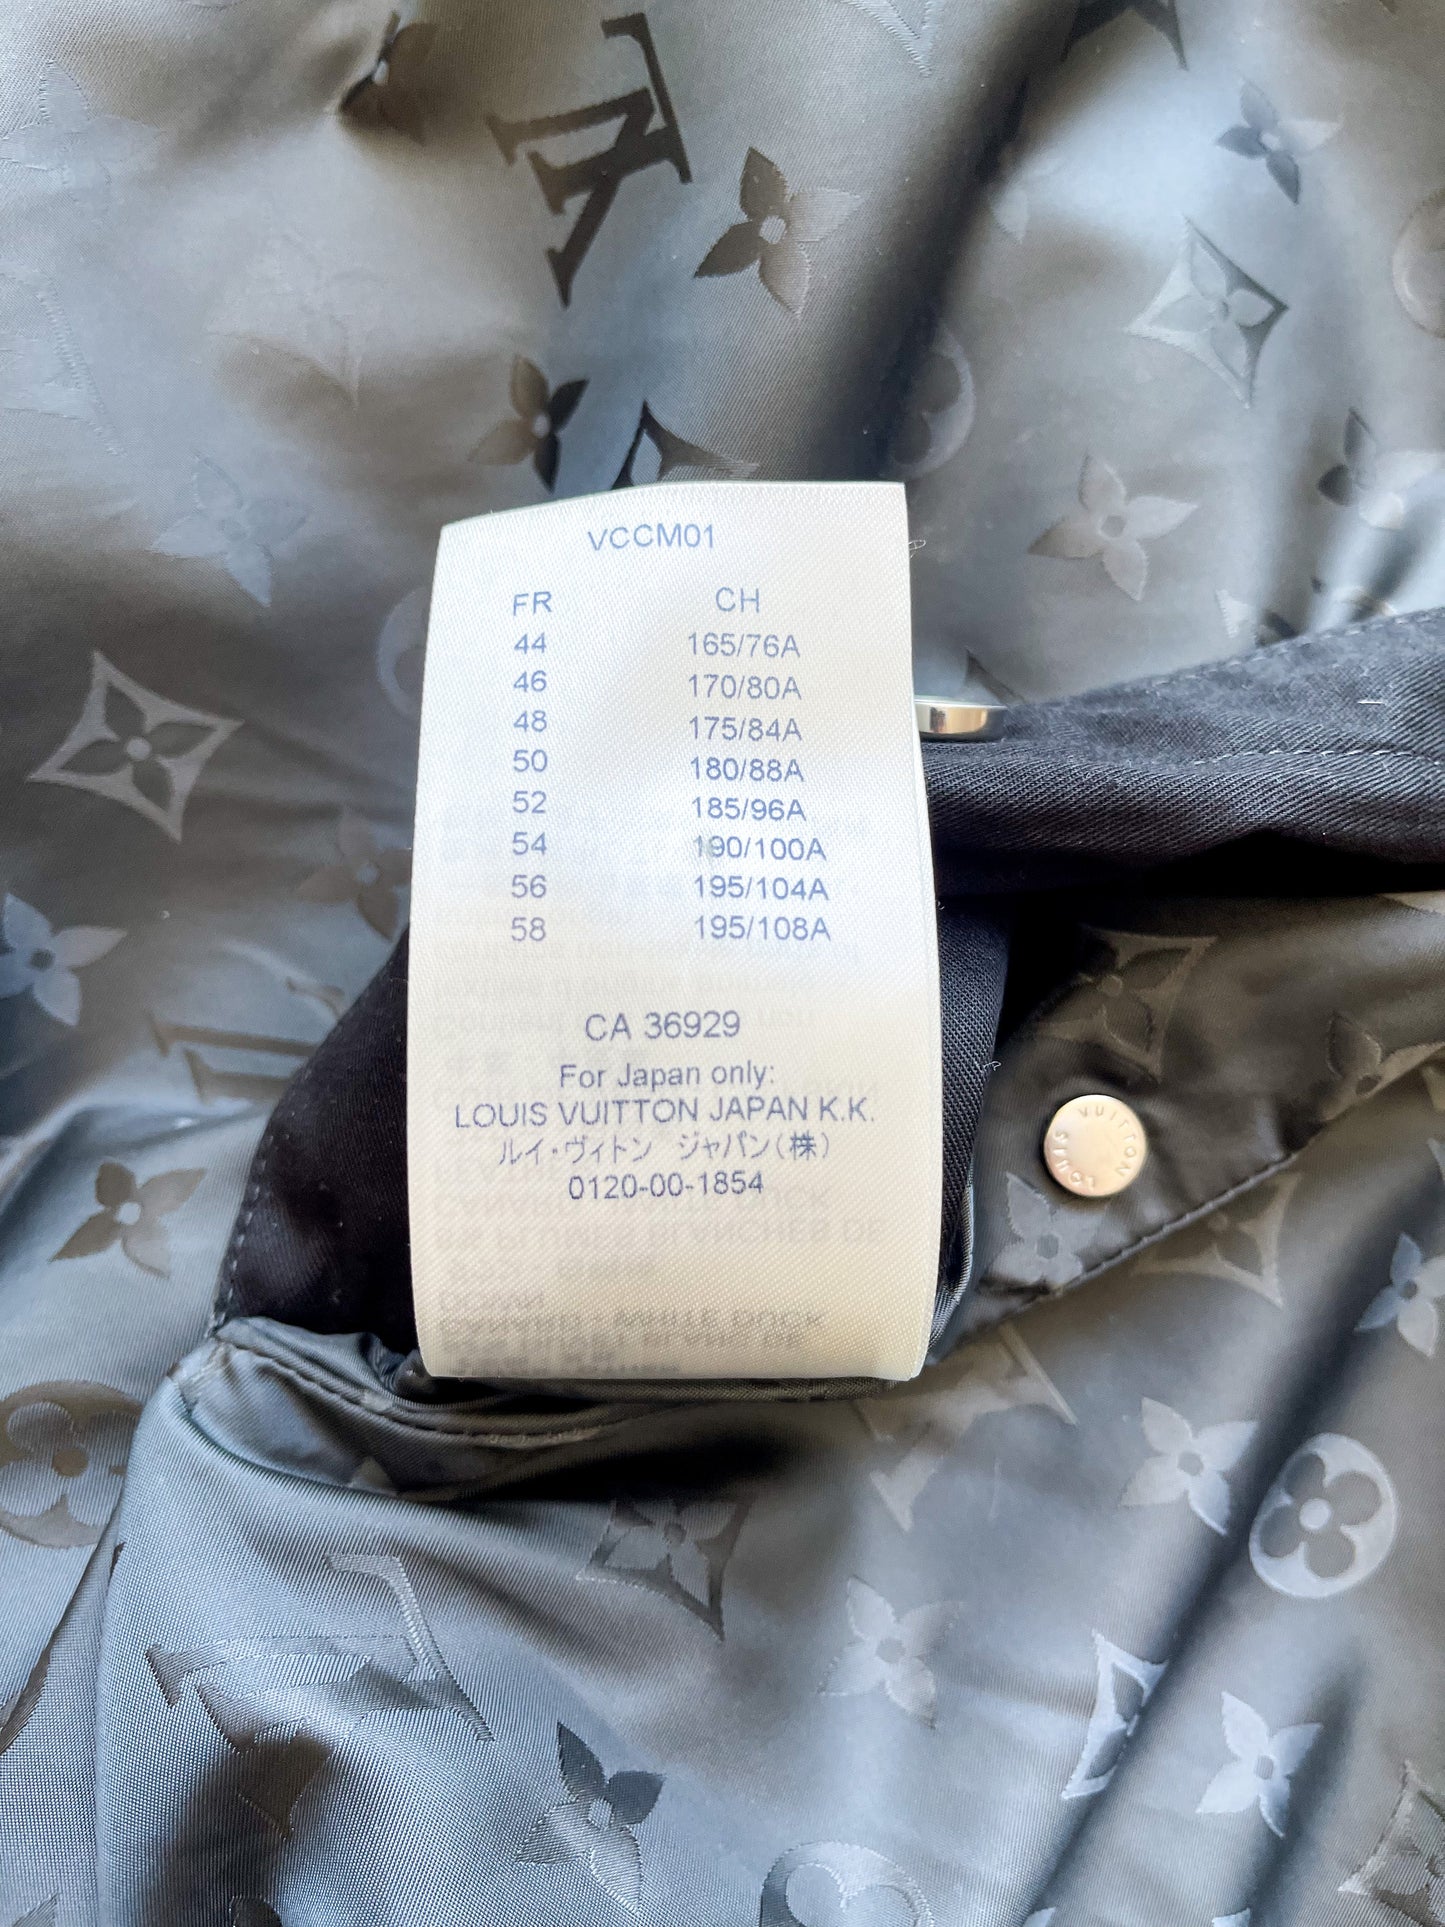 Shop Louis Vuitton Reversible Monogram Relief Bomber Jacket (1A9YAJ,  1A9YAI, 1A9YAH, 1A9YAG, 1A9YAF, 1A9YAE) by lifeisfun